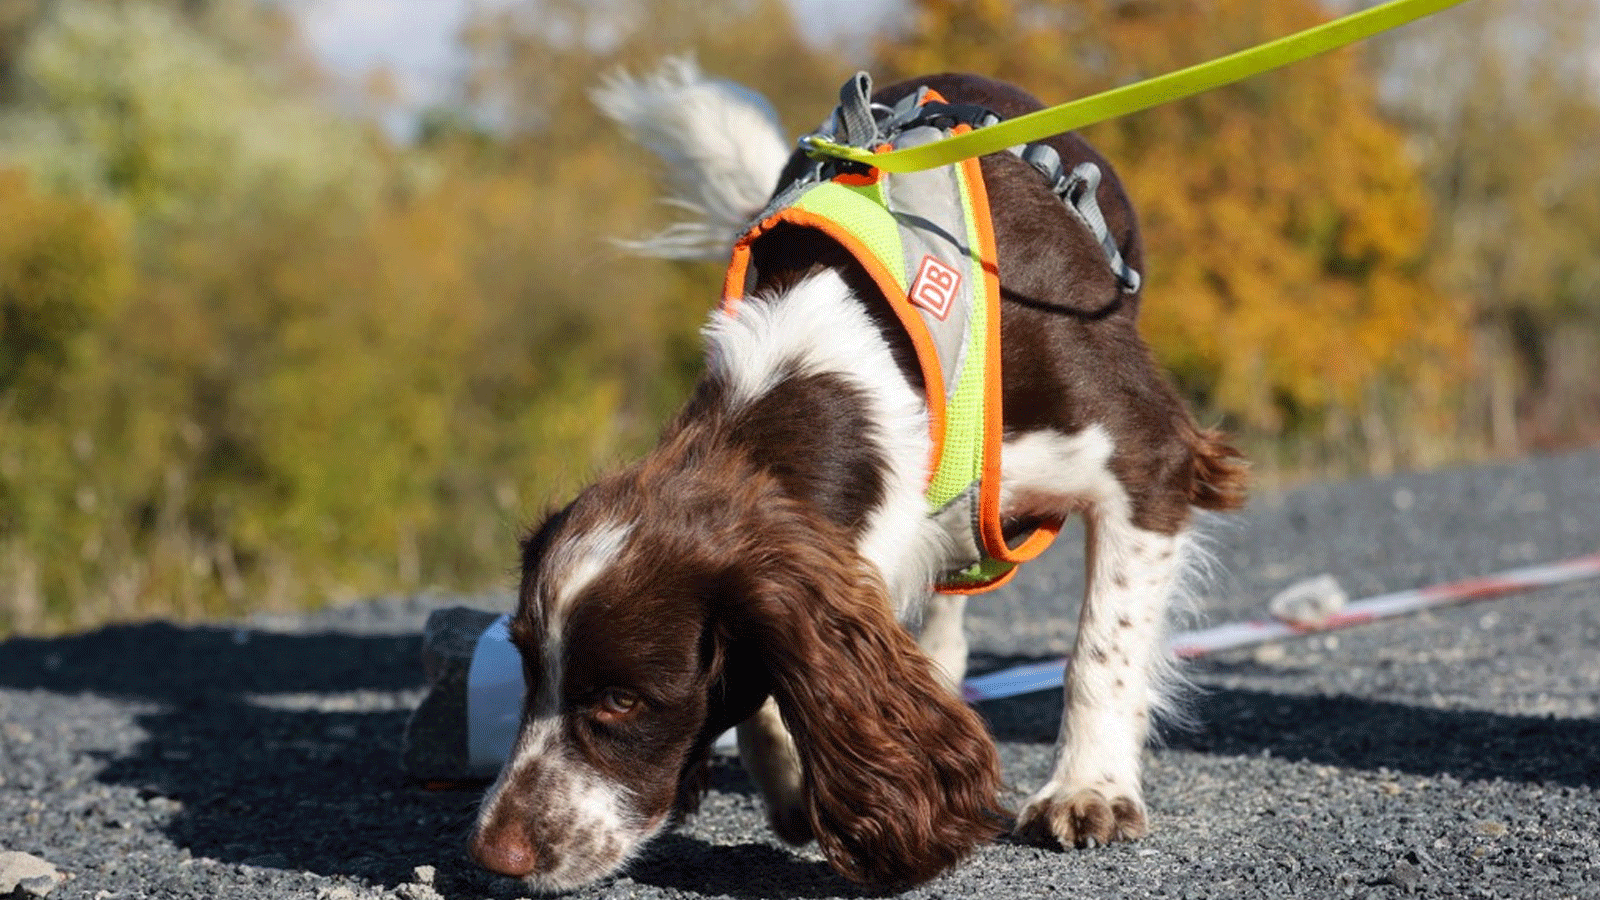 تم التقاط صورة لـ Cocker Spaniel يُدعى Monte ، والذي يتم تدريبه على أنه كلب كشف للعثور على الأنواع المهددة بالانقراض، خلال مظاهرة قام بها مشغل السكك الحديدية الألماني Deutsche Bahn في 26 تشرين الأول/ أكتوبر 2021، في فرانكفورت أم ماين، غرب ألمانيا.